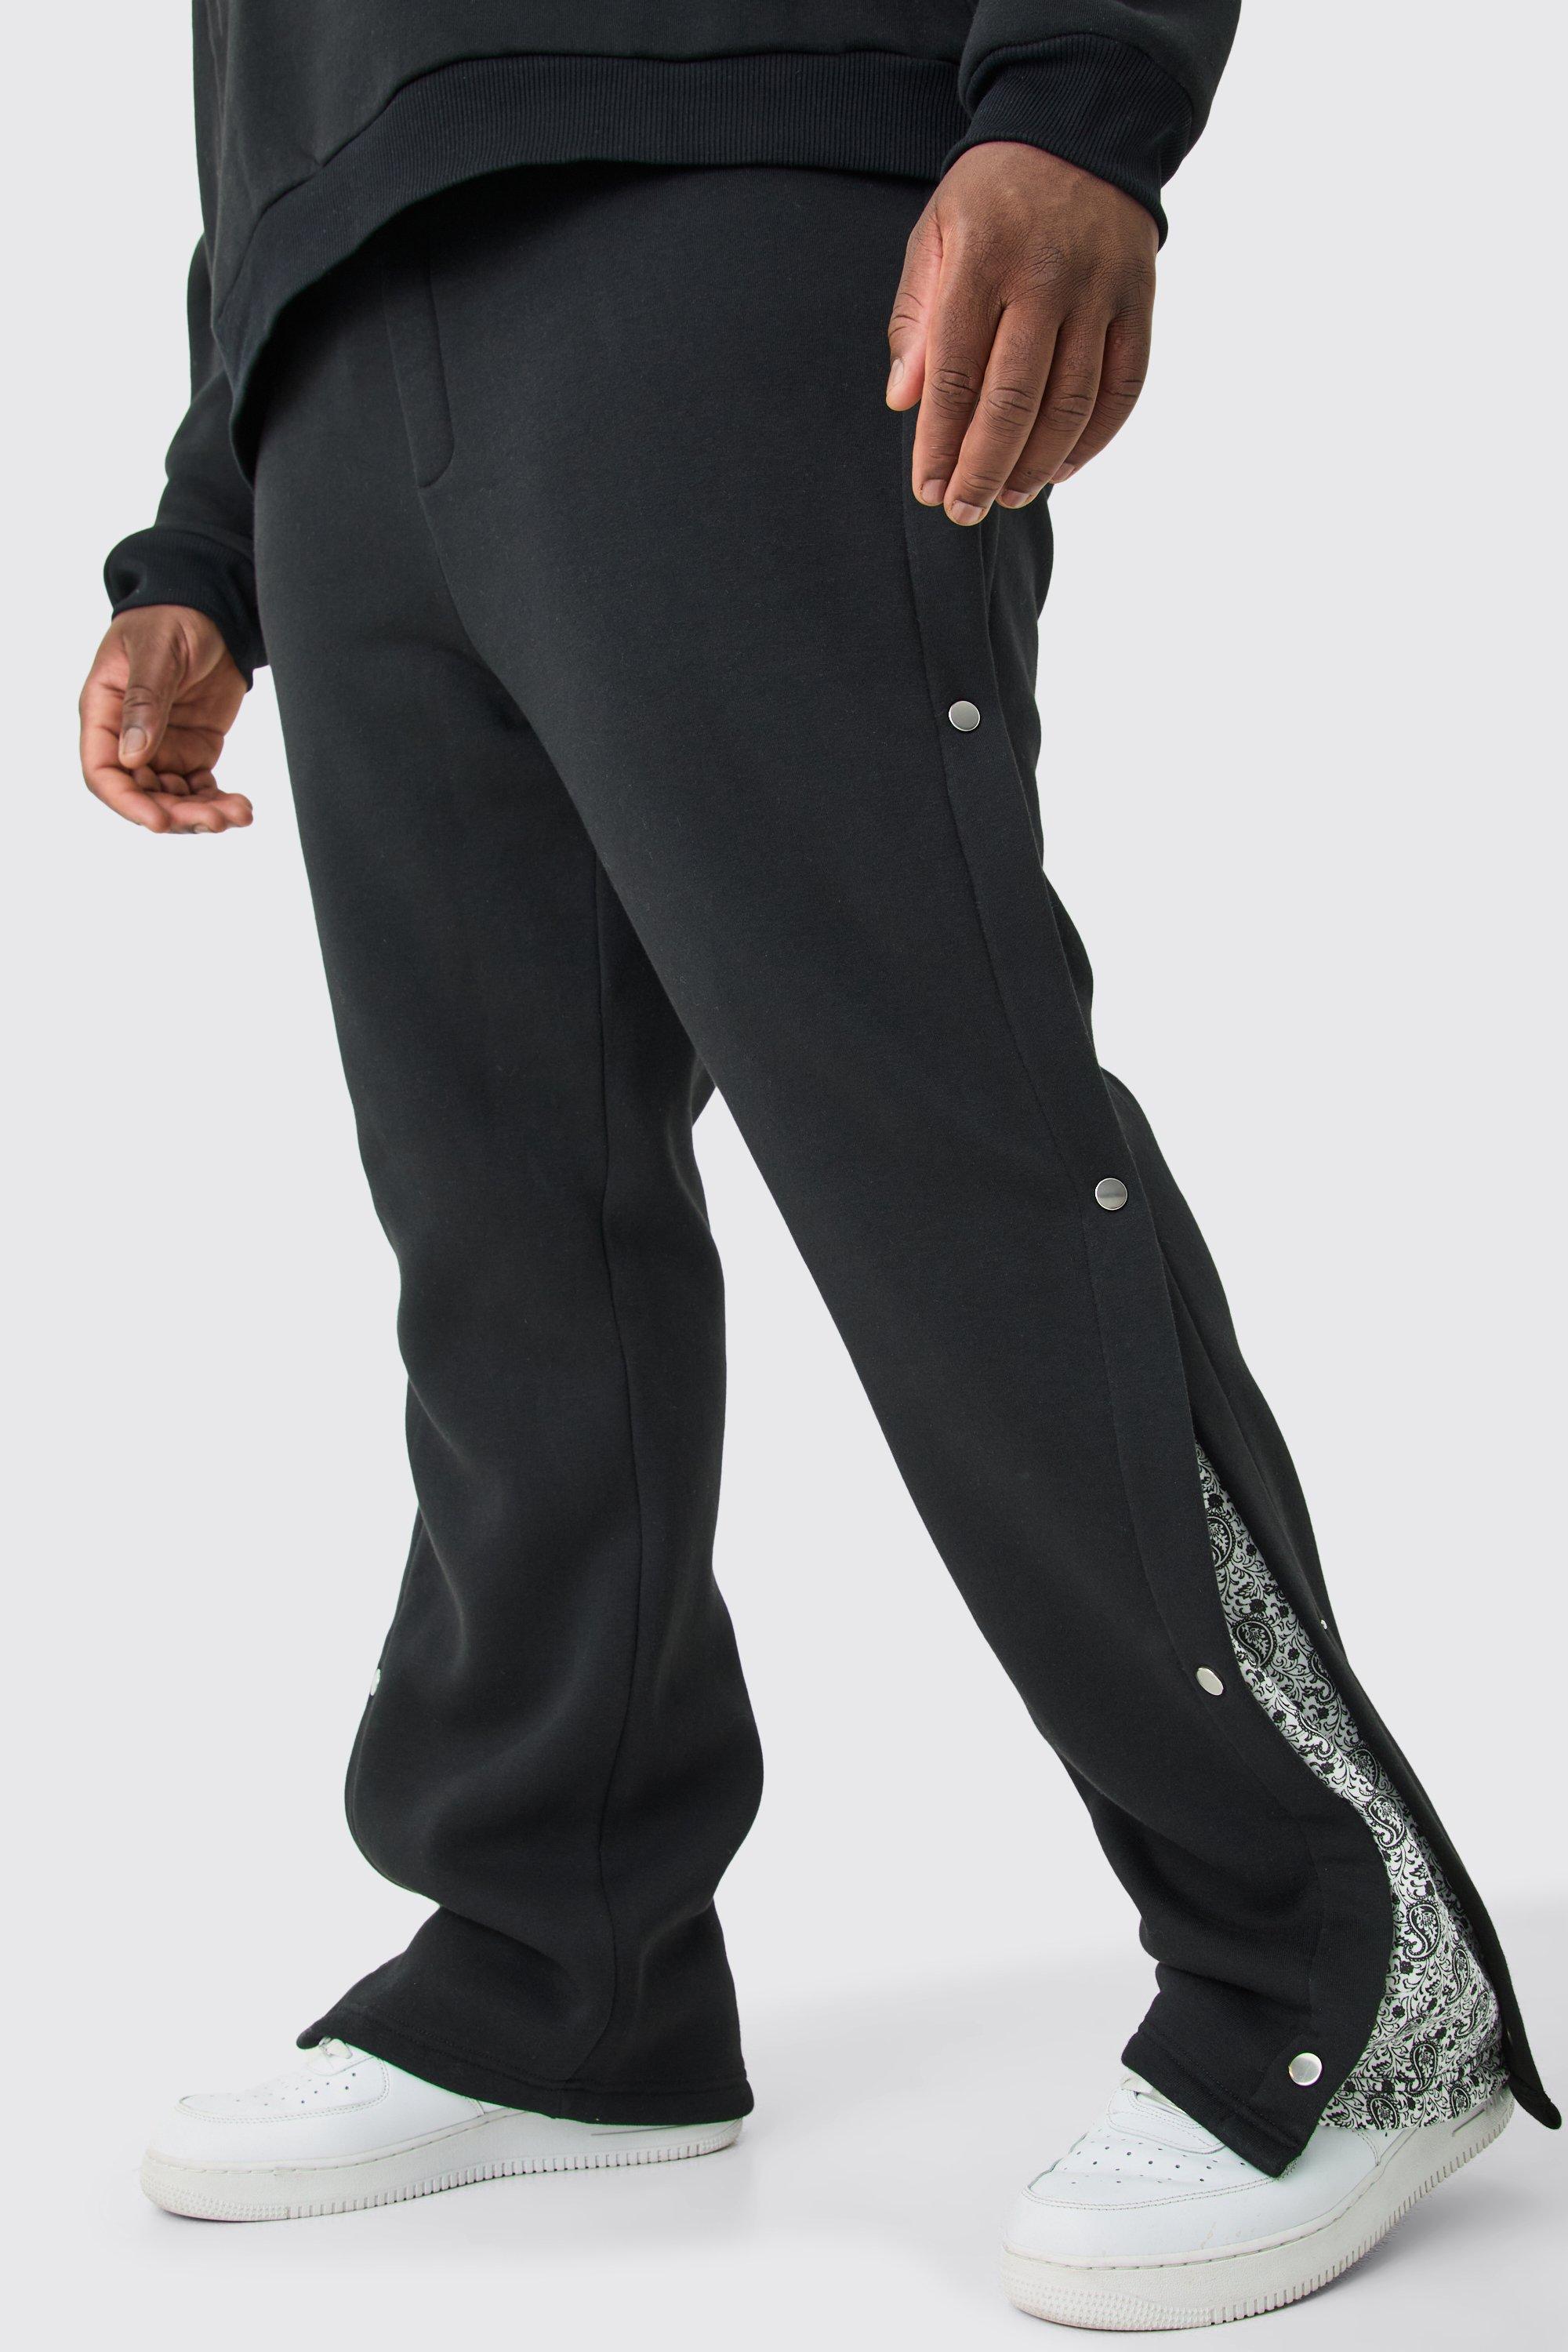 Image of Pantaloni tuta Plus Size rilassati con stampa e pannelli laterali con bottoni a pressione, Nero